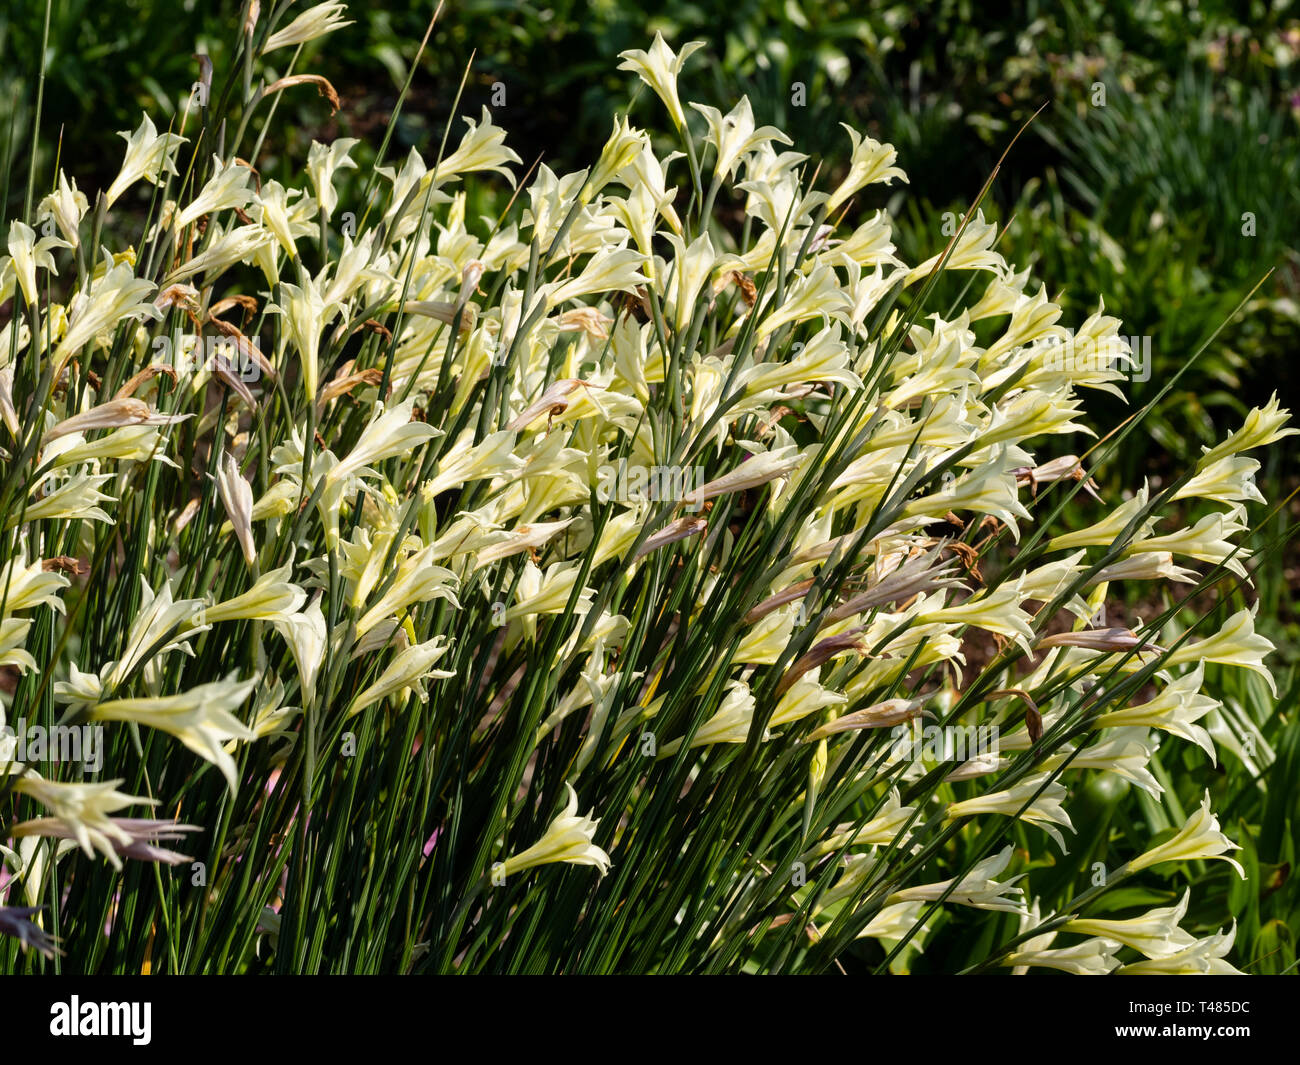 Fleurs crème trompettes de la moitié de l'Afrique du Sud, hardy corm, Gladiolus tristis, dans un milieu de l'affichage du printemps Banque D'Images